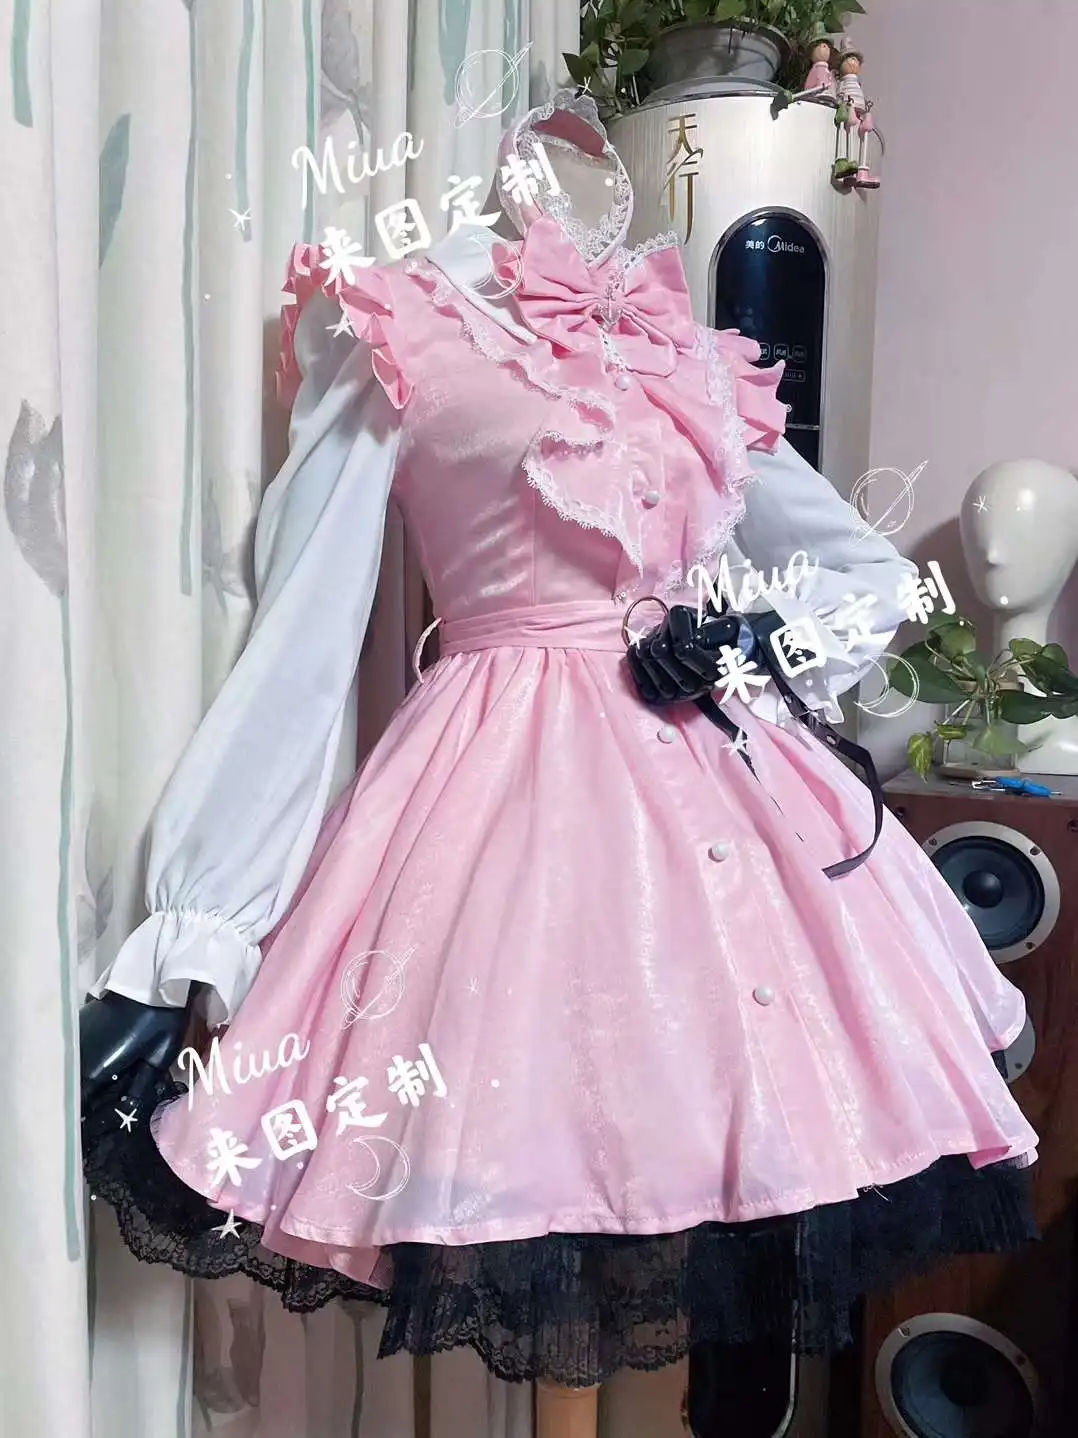 

Аниме игра Vtuber Hololive Minato Aqua Lolita розовое платье повседневная униформа косплей костюм ролевая игра Хэллоуин Карнавал женщины 2022